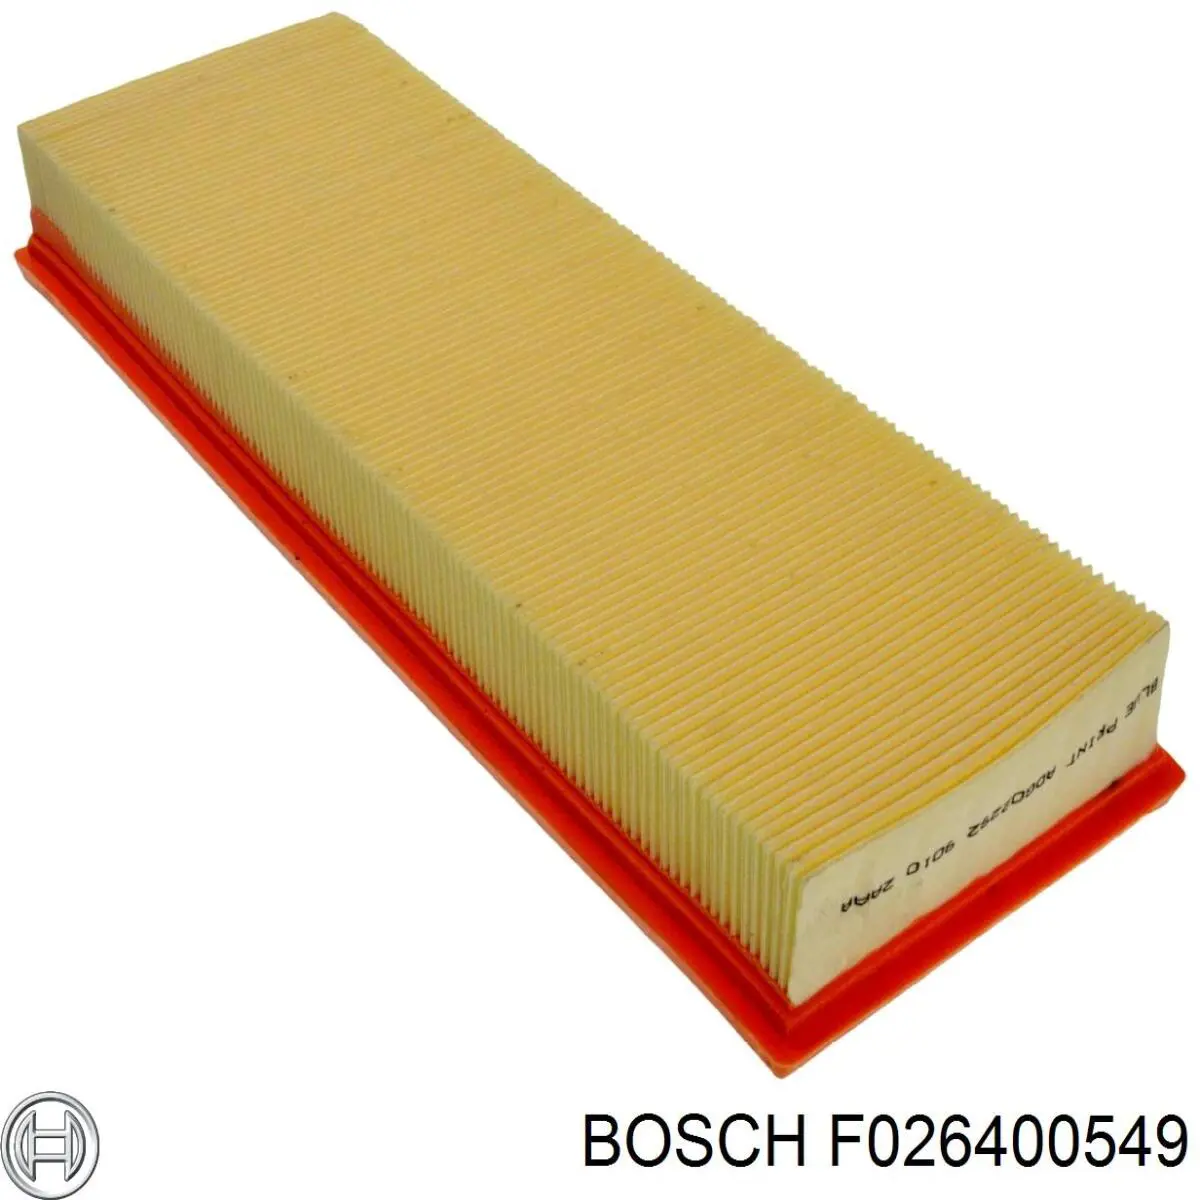 F026400549 Bosch filtro de aire